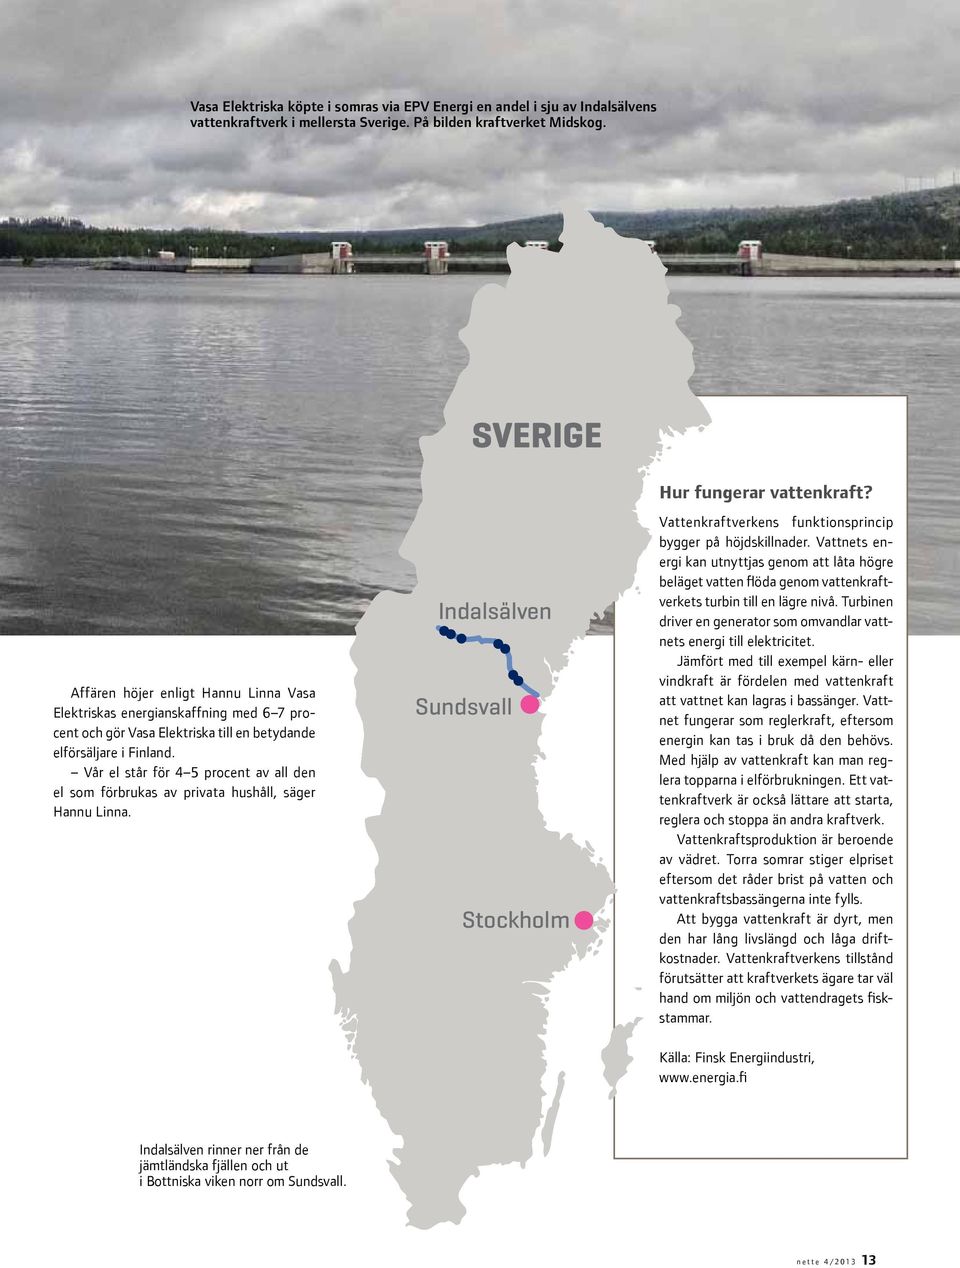 Vår el står för 4 5 procent av all den el som förbrukas av privata hushåll, säger Hannu Linna. Indalsälven Sundsvall Stockholm Hur fungerar vattenkraft?